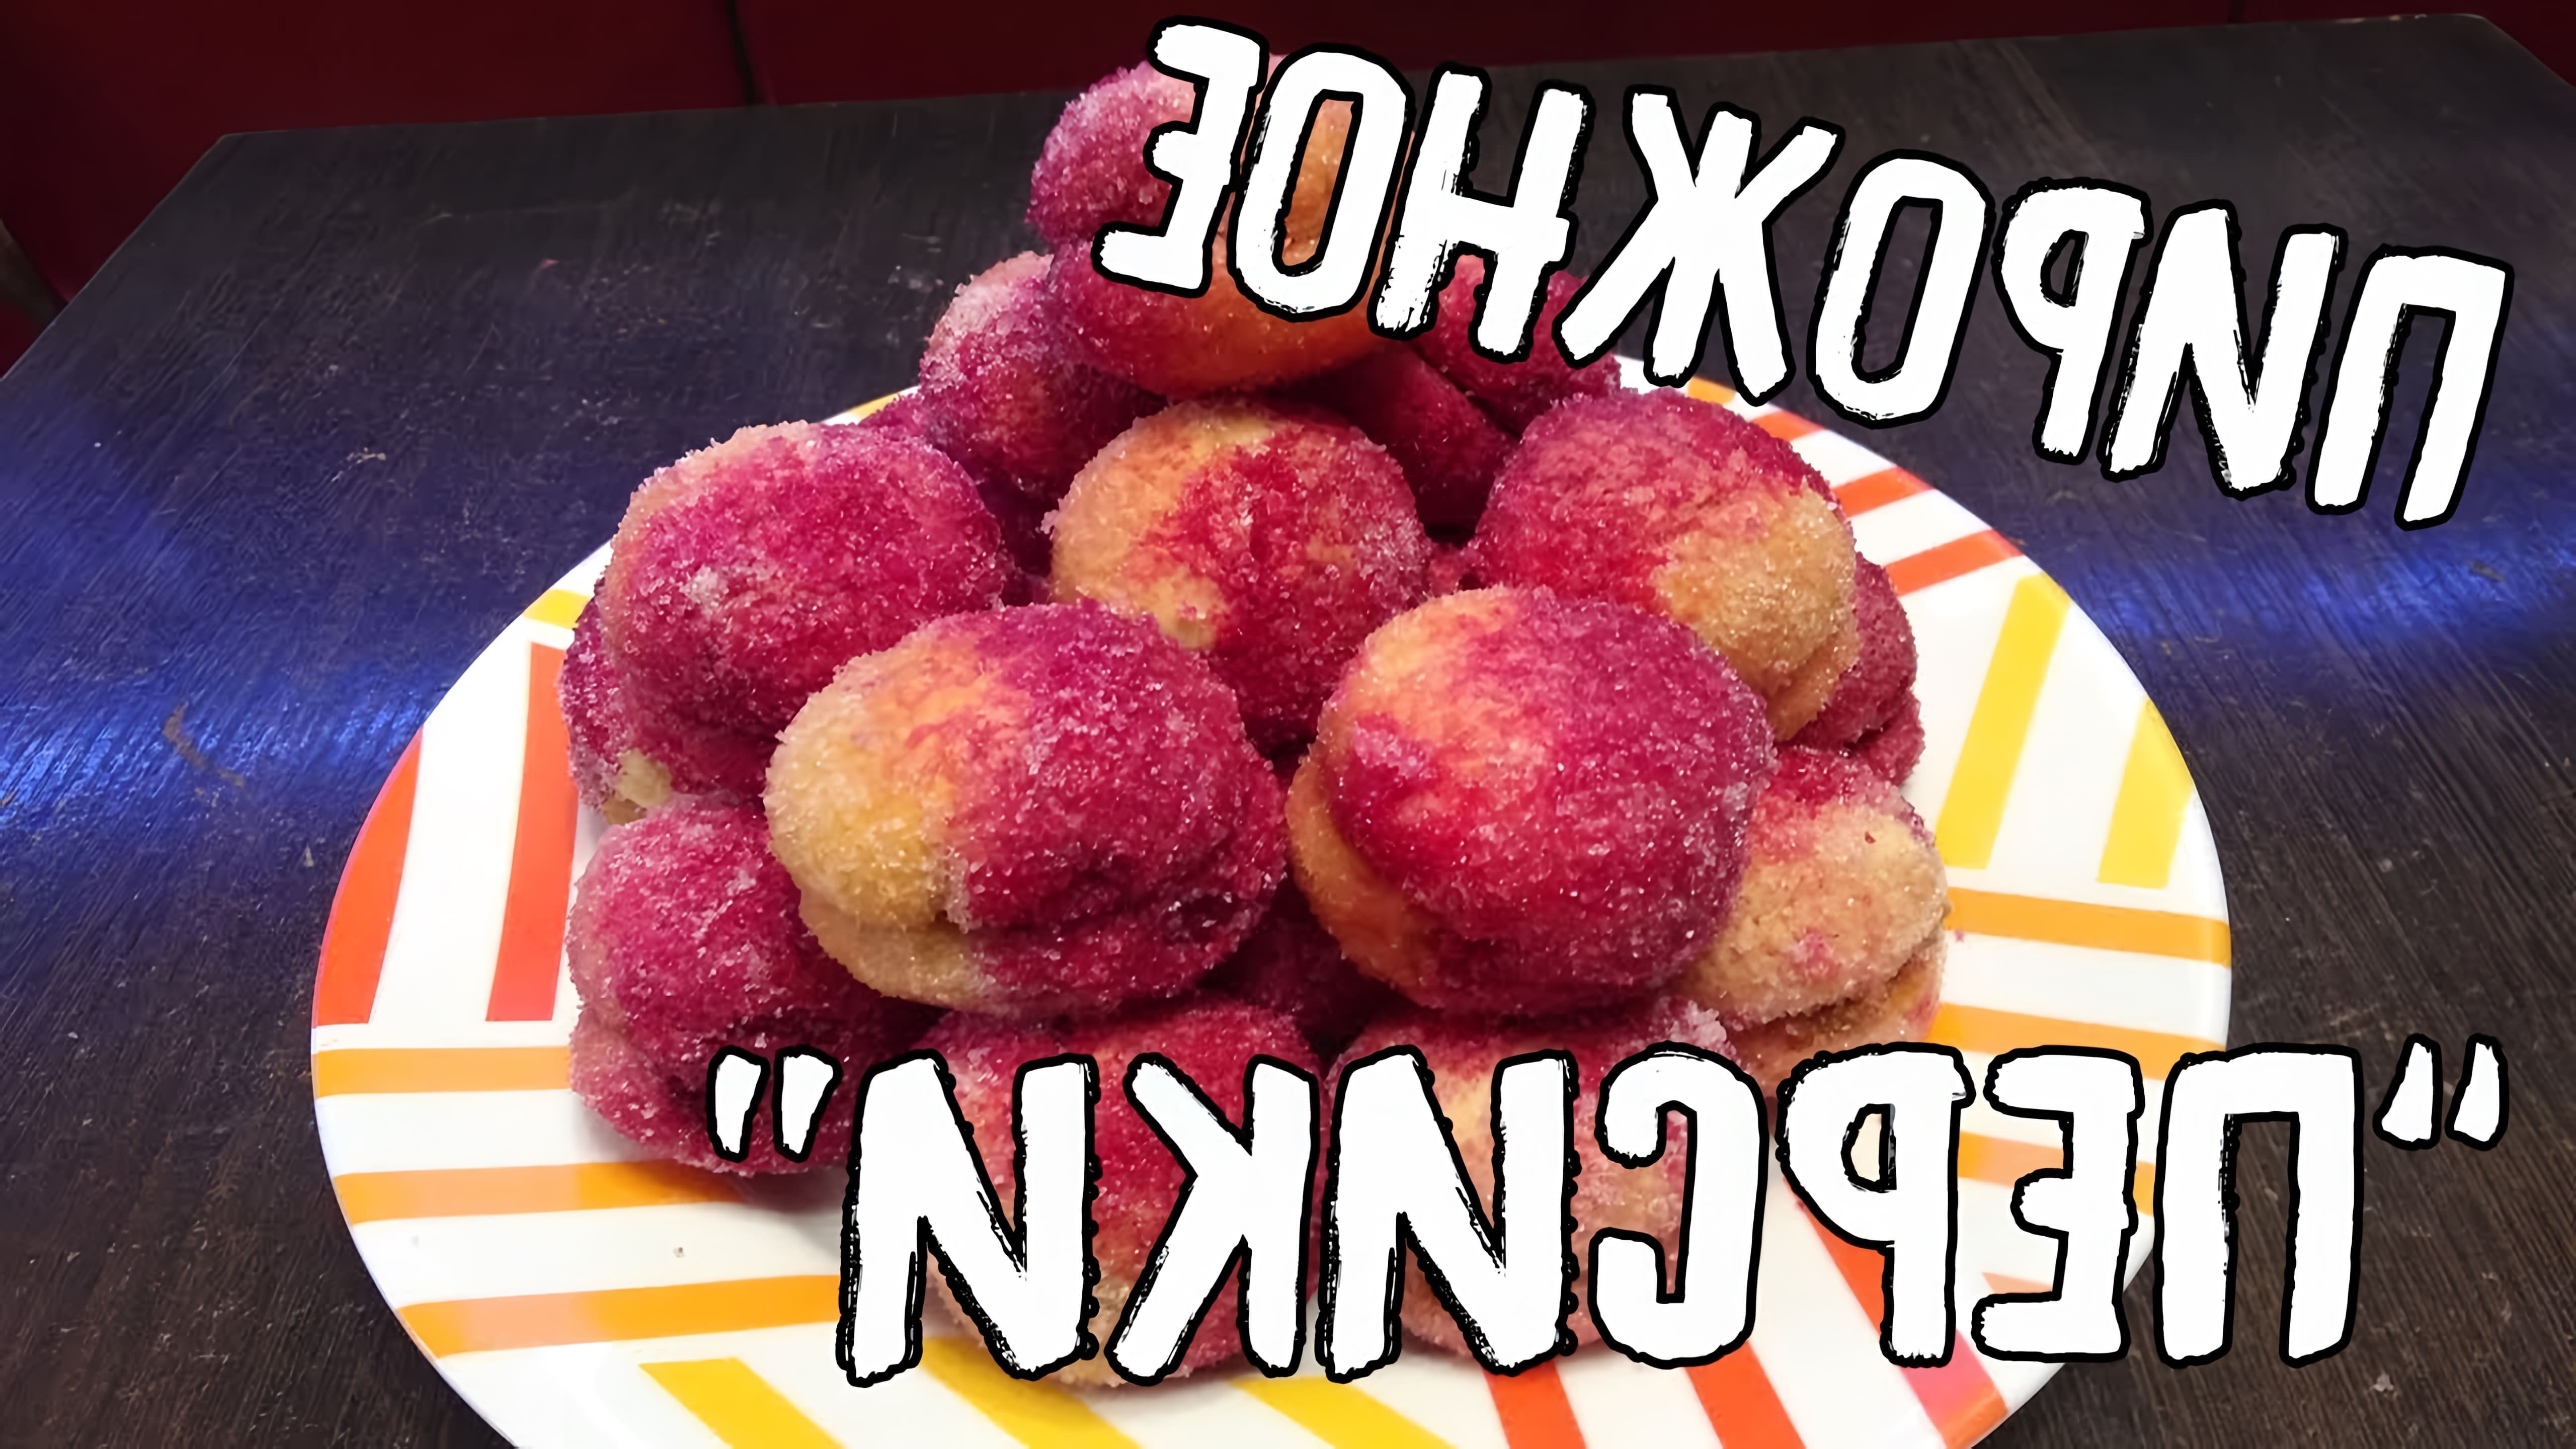 В этом видео Анастасия делится рецептом пирожных "Персики", которые были ее любимым лакомством в детстве